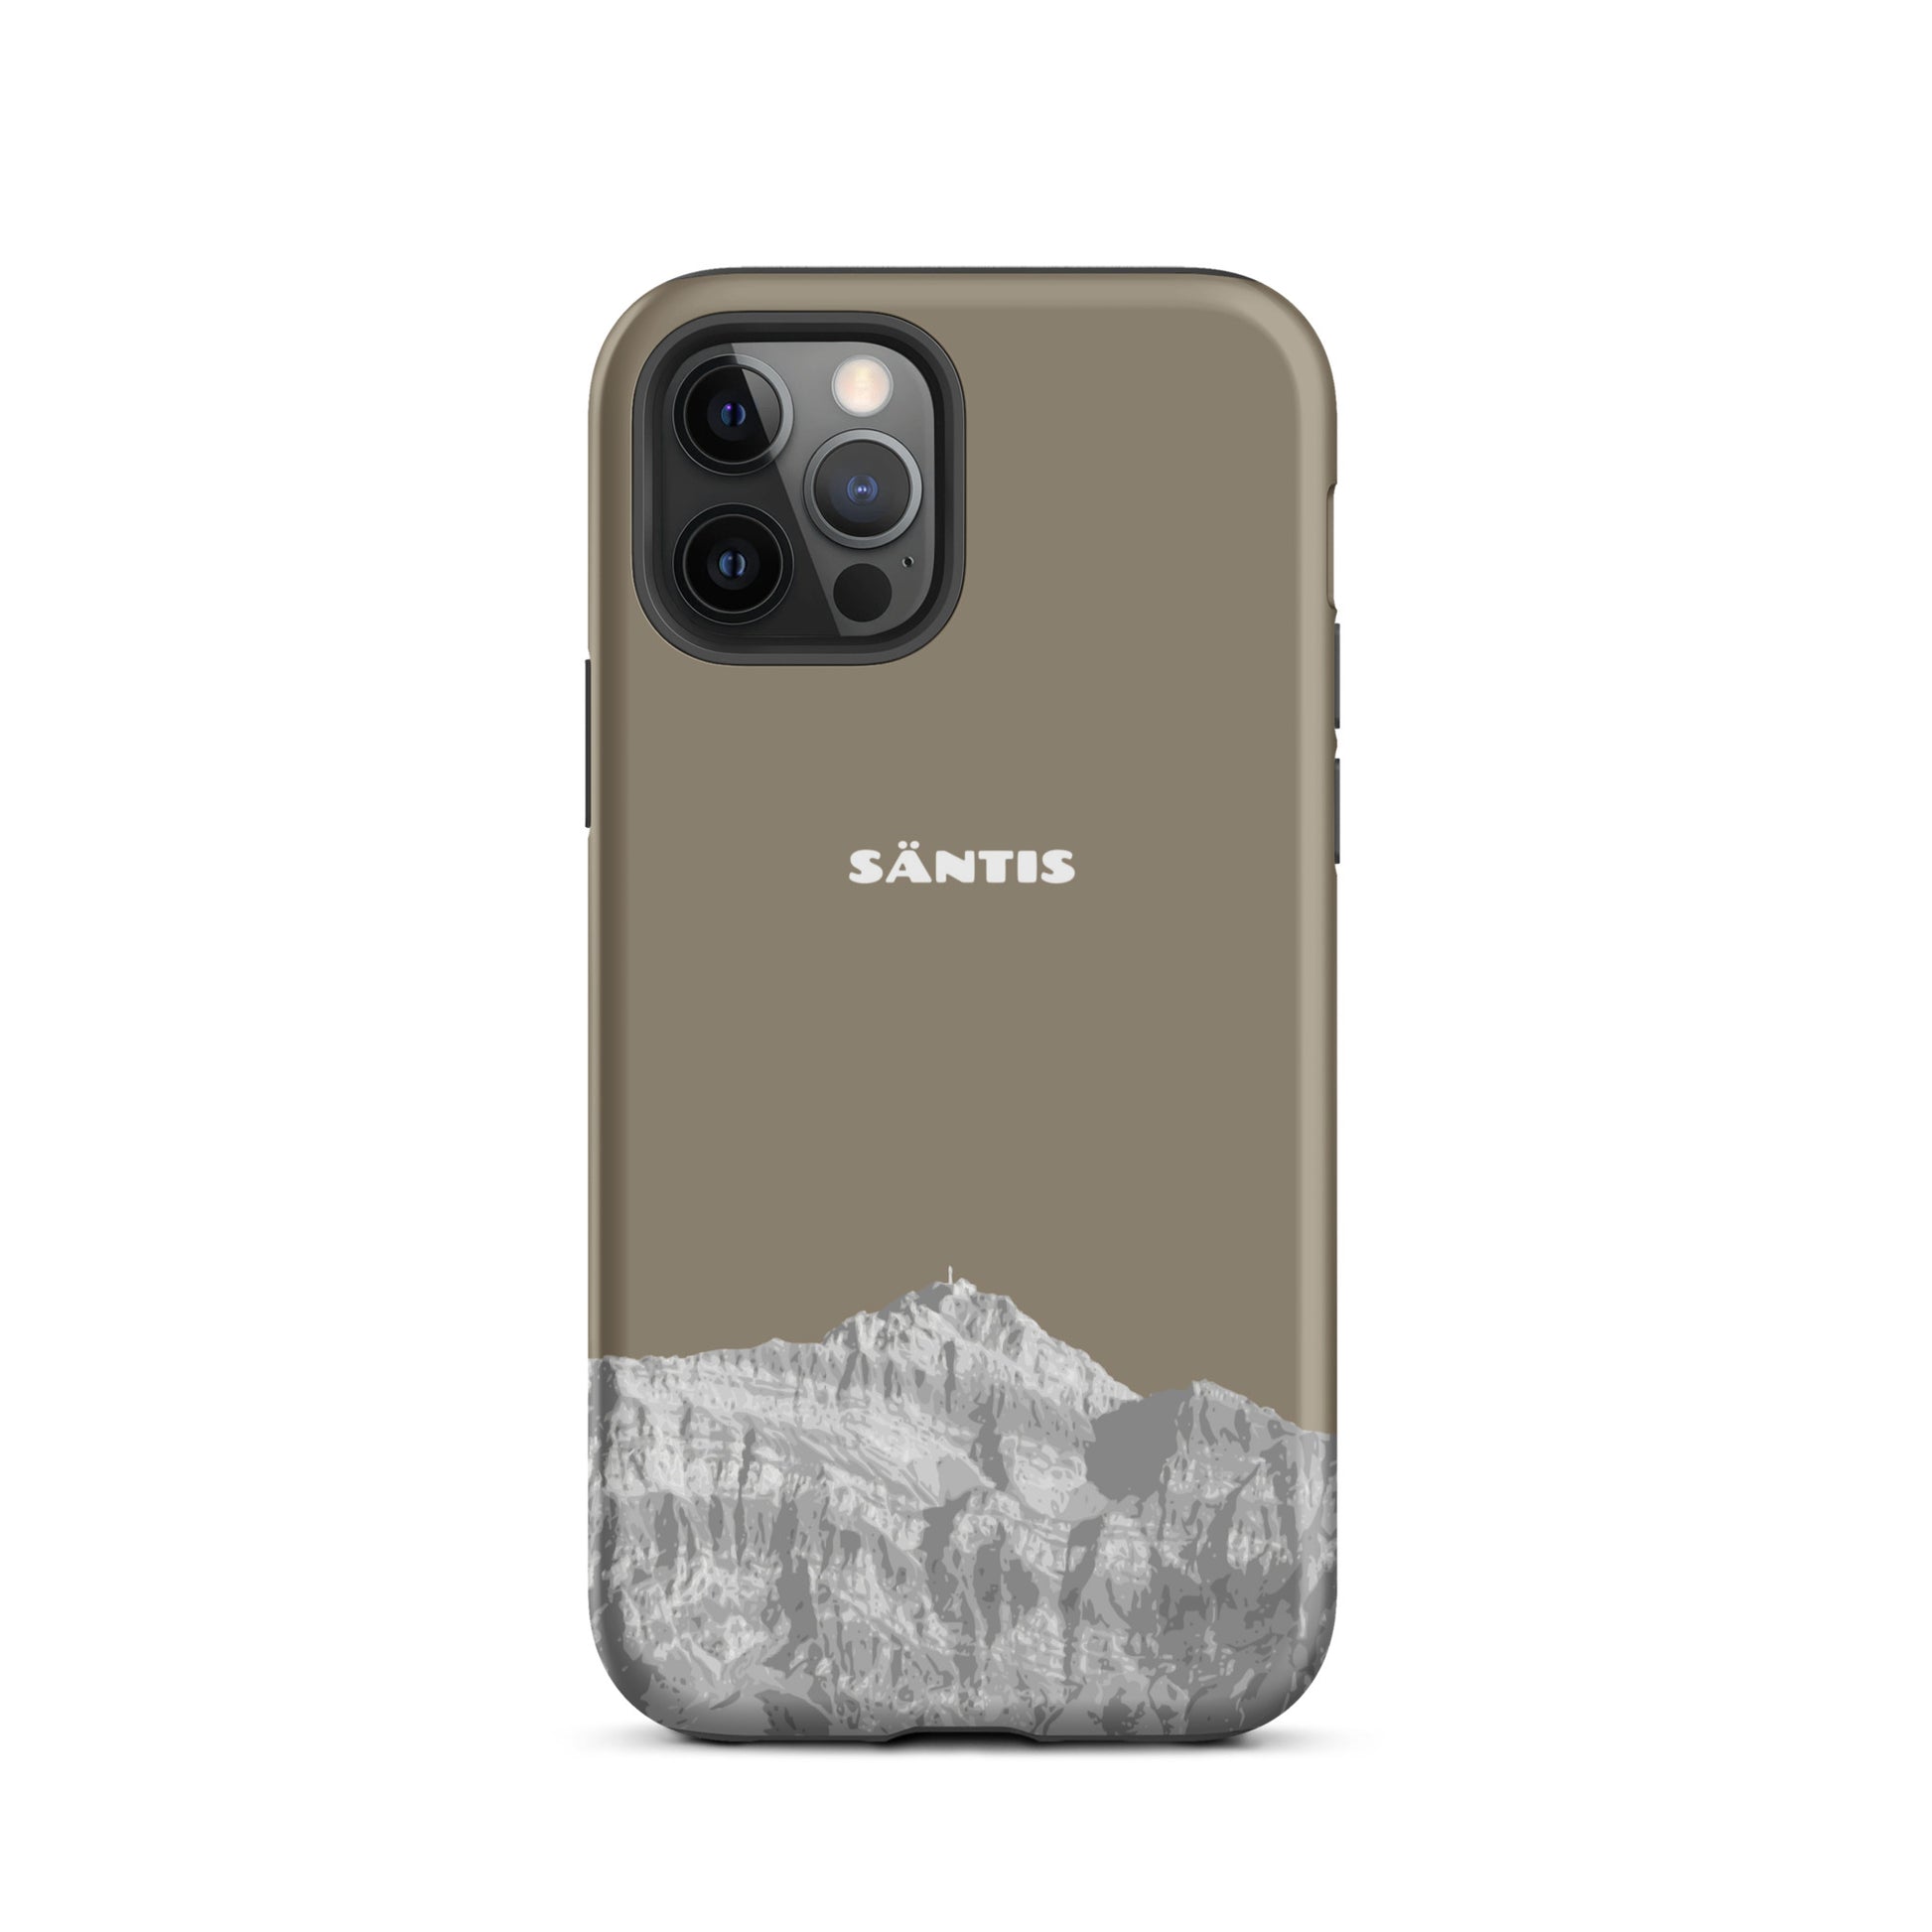 Hülle für das iPhone 12 Pro von Apple in der Farbe Graubraun, dass den Säntis im Alpstein zeigt.